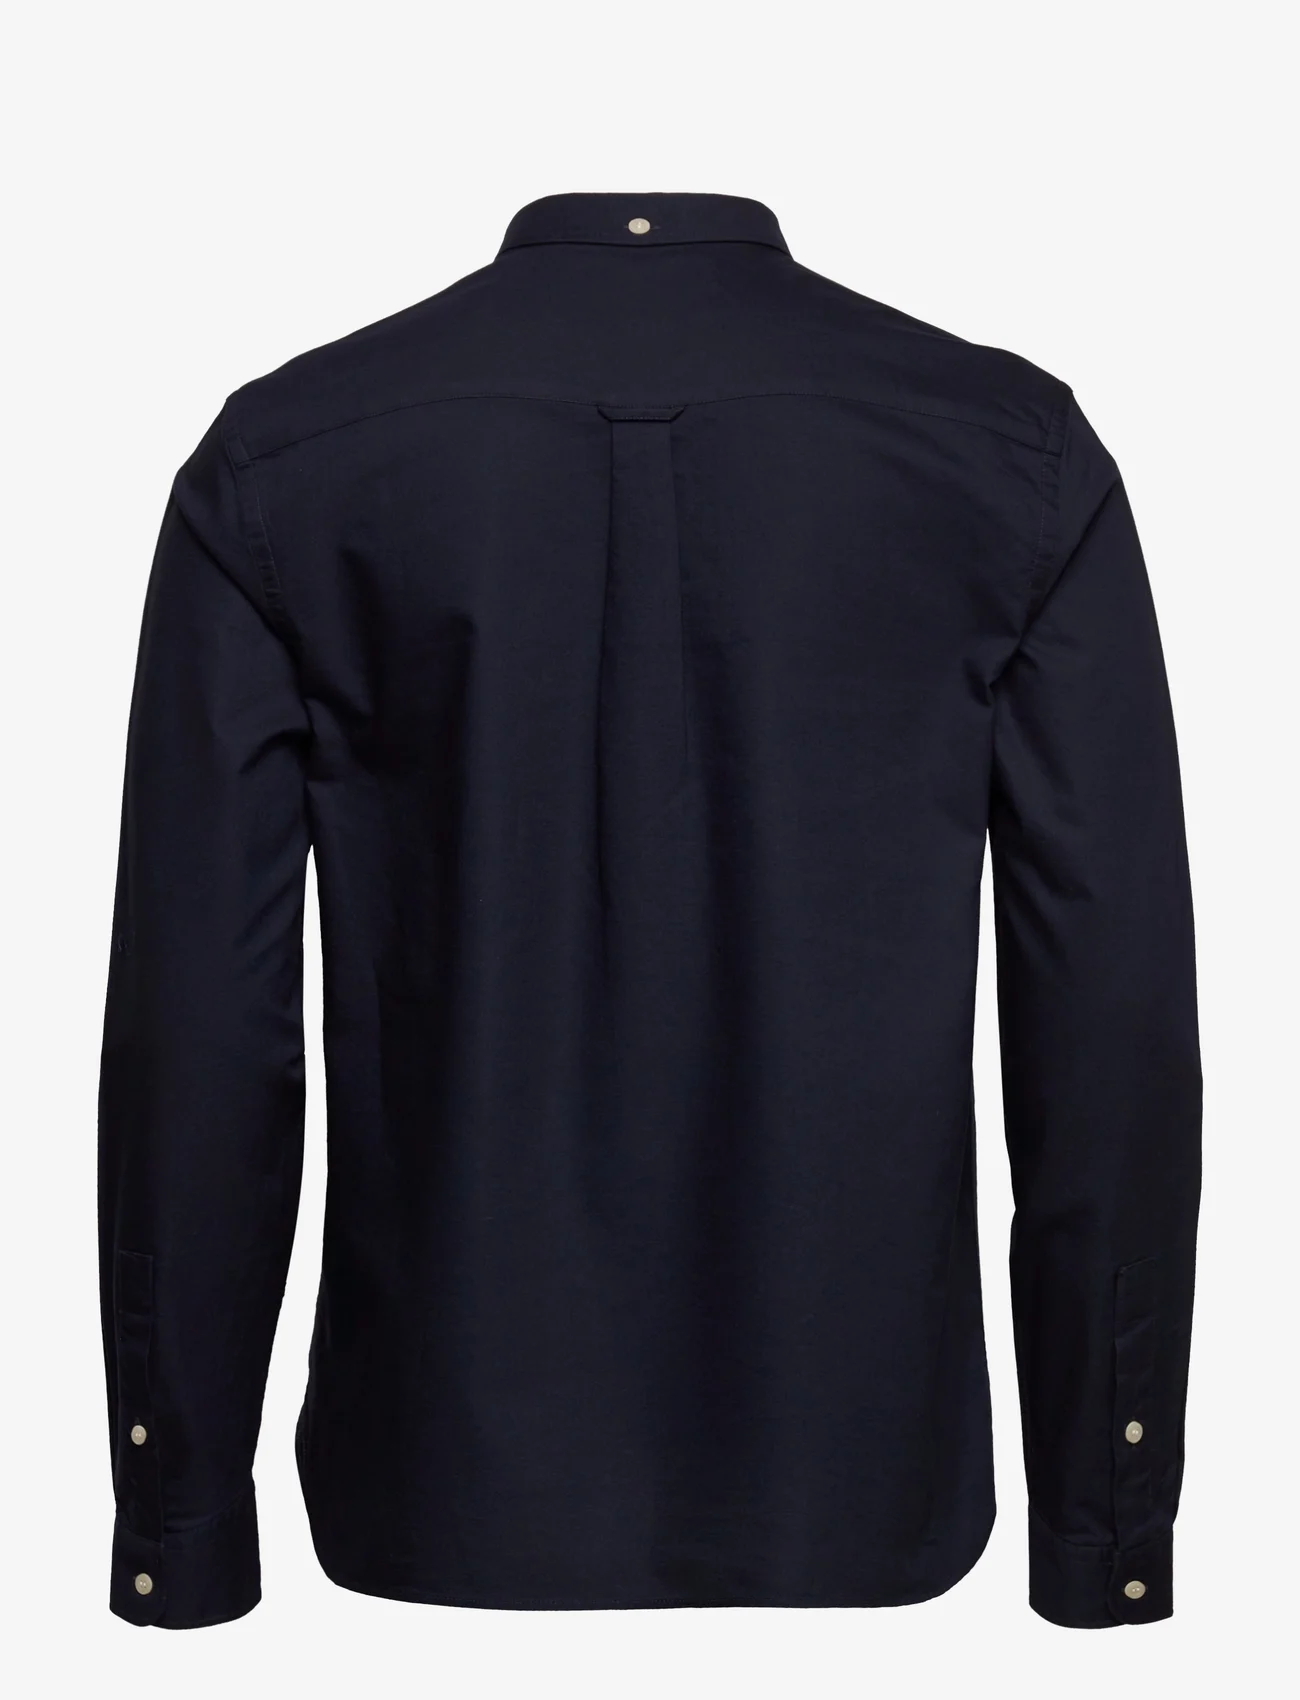 Lyle & Scott - Regular Fit Light Weight Oxford Shirt - oxford skjorter - dark navy - 1